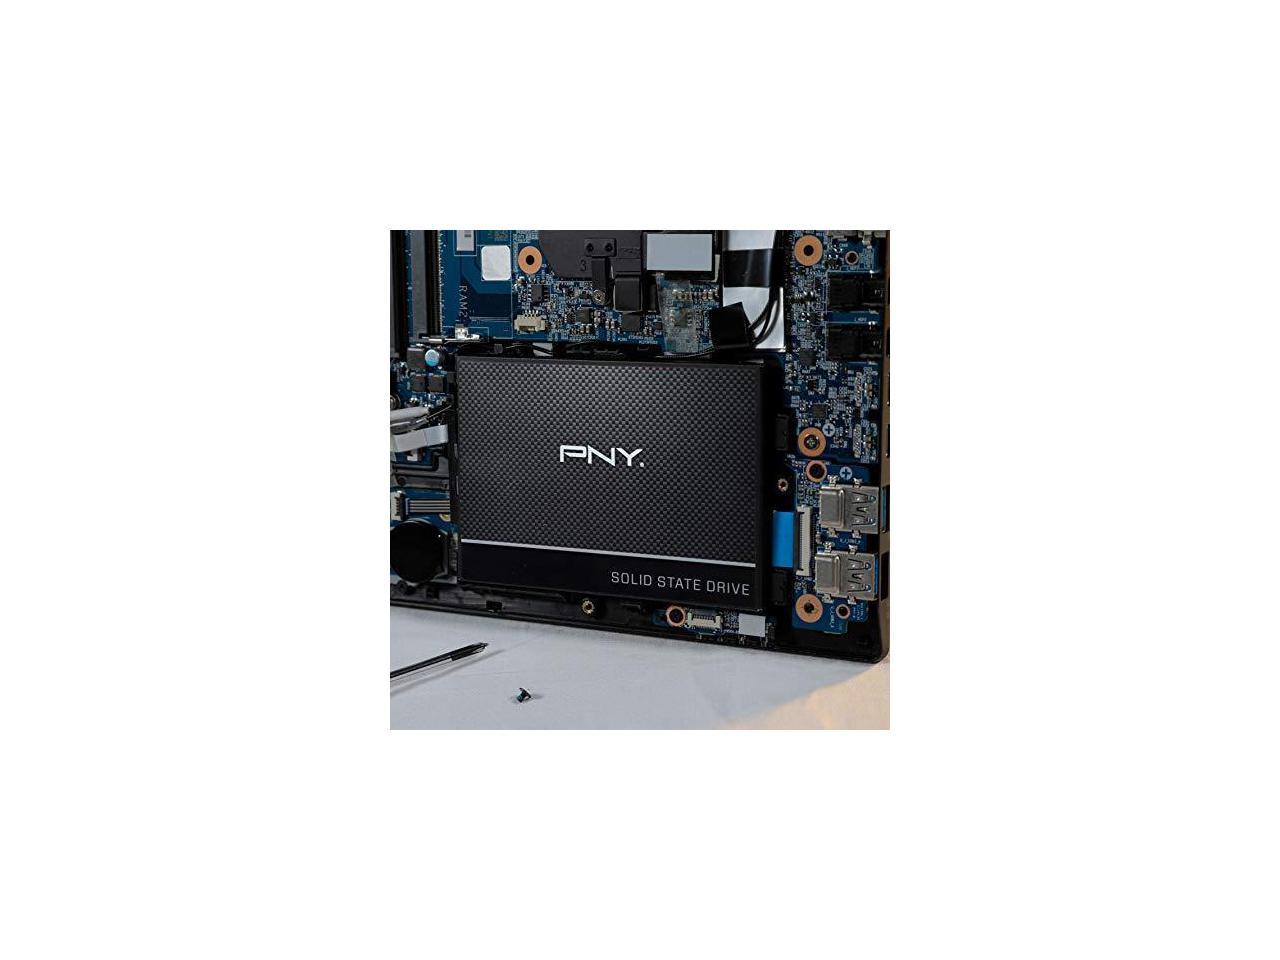 PNY CS900 250GB 2.5â€? SATA III Internal Solid State Drive (SSD) - (SSD7CS900-250-Rb)